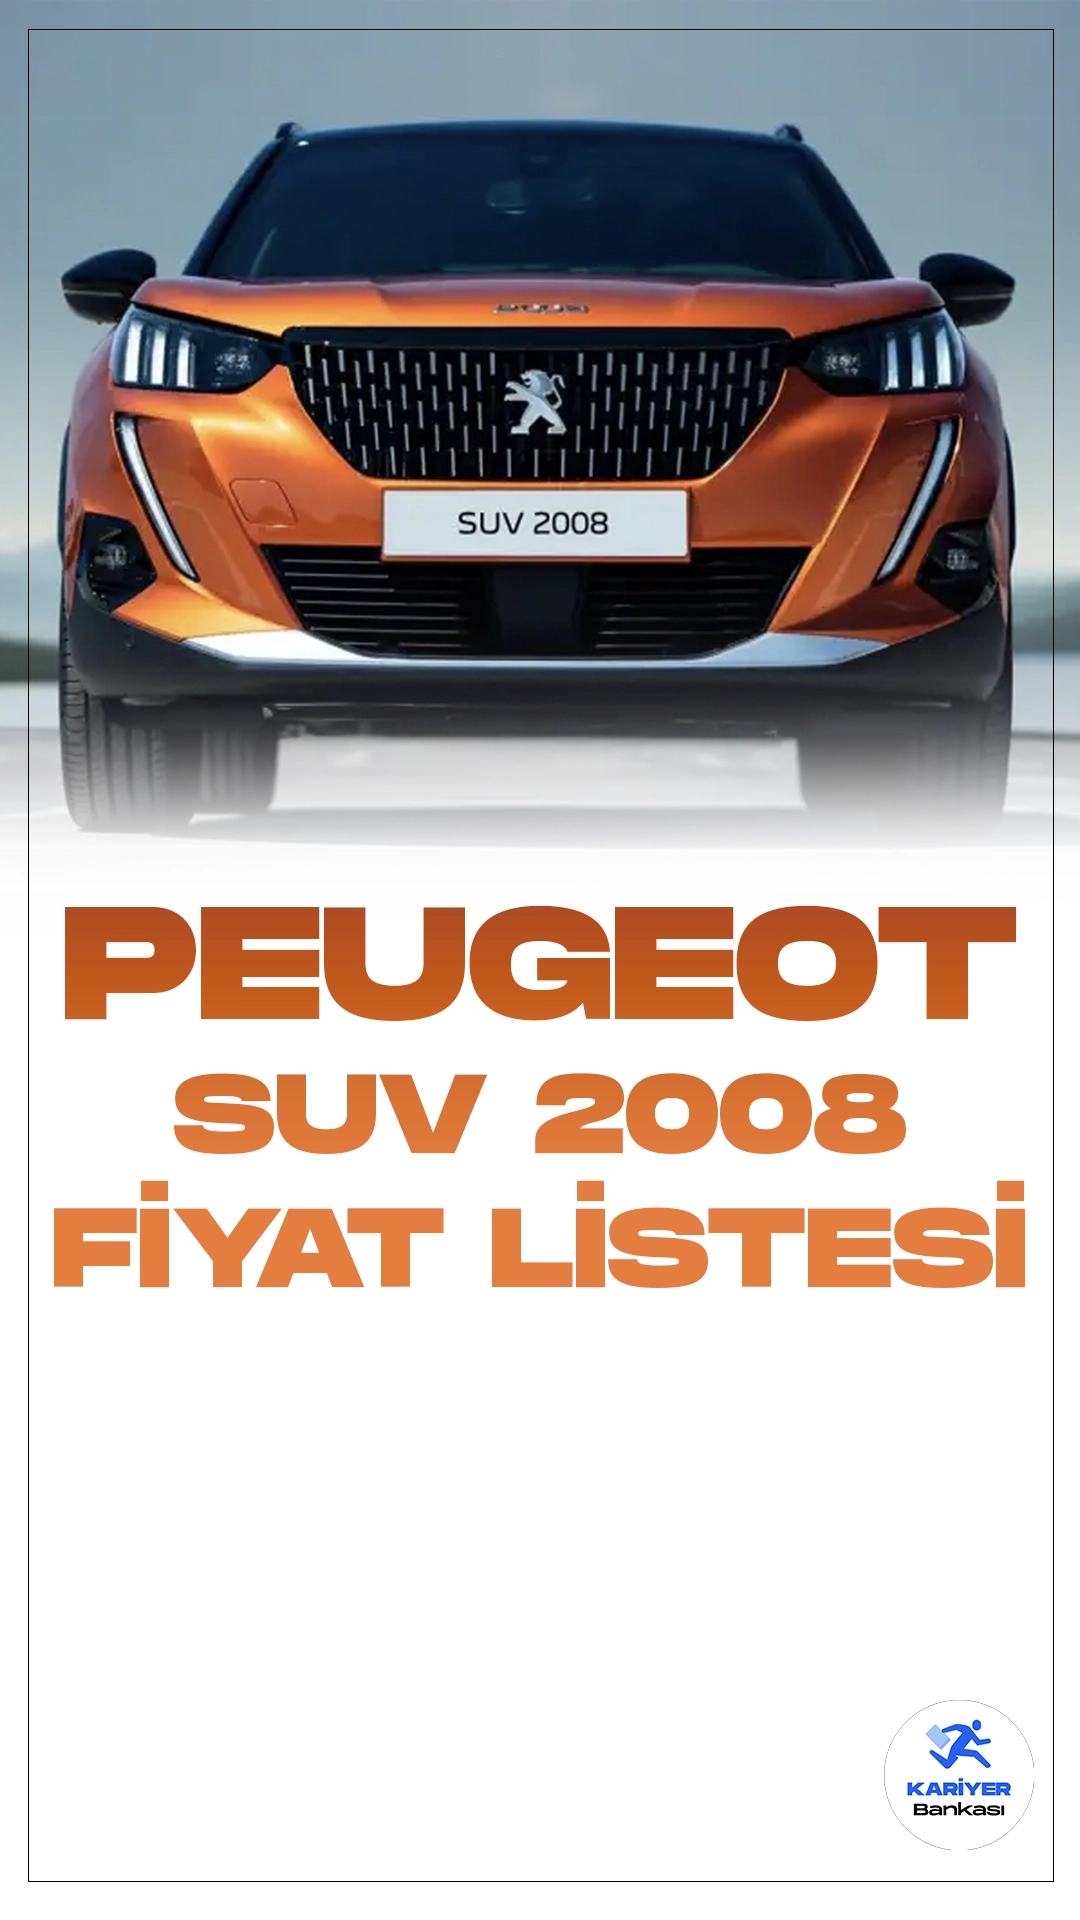 Peugeot Suv 2008 Ocak 2024 Fiyat Listesi Yayımlandı.Peugeot'un kompakt SUV segmentindeki iddialı modeli Peugeot 2008, şehir içi kullanımıyla dikkat çekiyor. Modern tasarımı ve geniş iç mekanıyla öne çıkan bu araç, şehir yaşamında pratik ve şık bir seçenek sunuyor. Yüksek sürüş pozisyonu, sürücüye geniş bir görüş açısı sağlarken, kompakt boyutları park manevralarını kolaylaştırıyor.